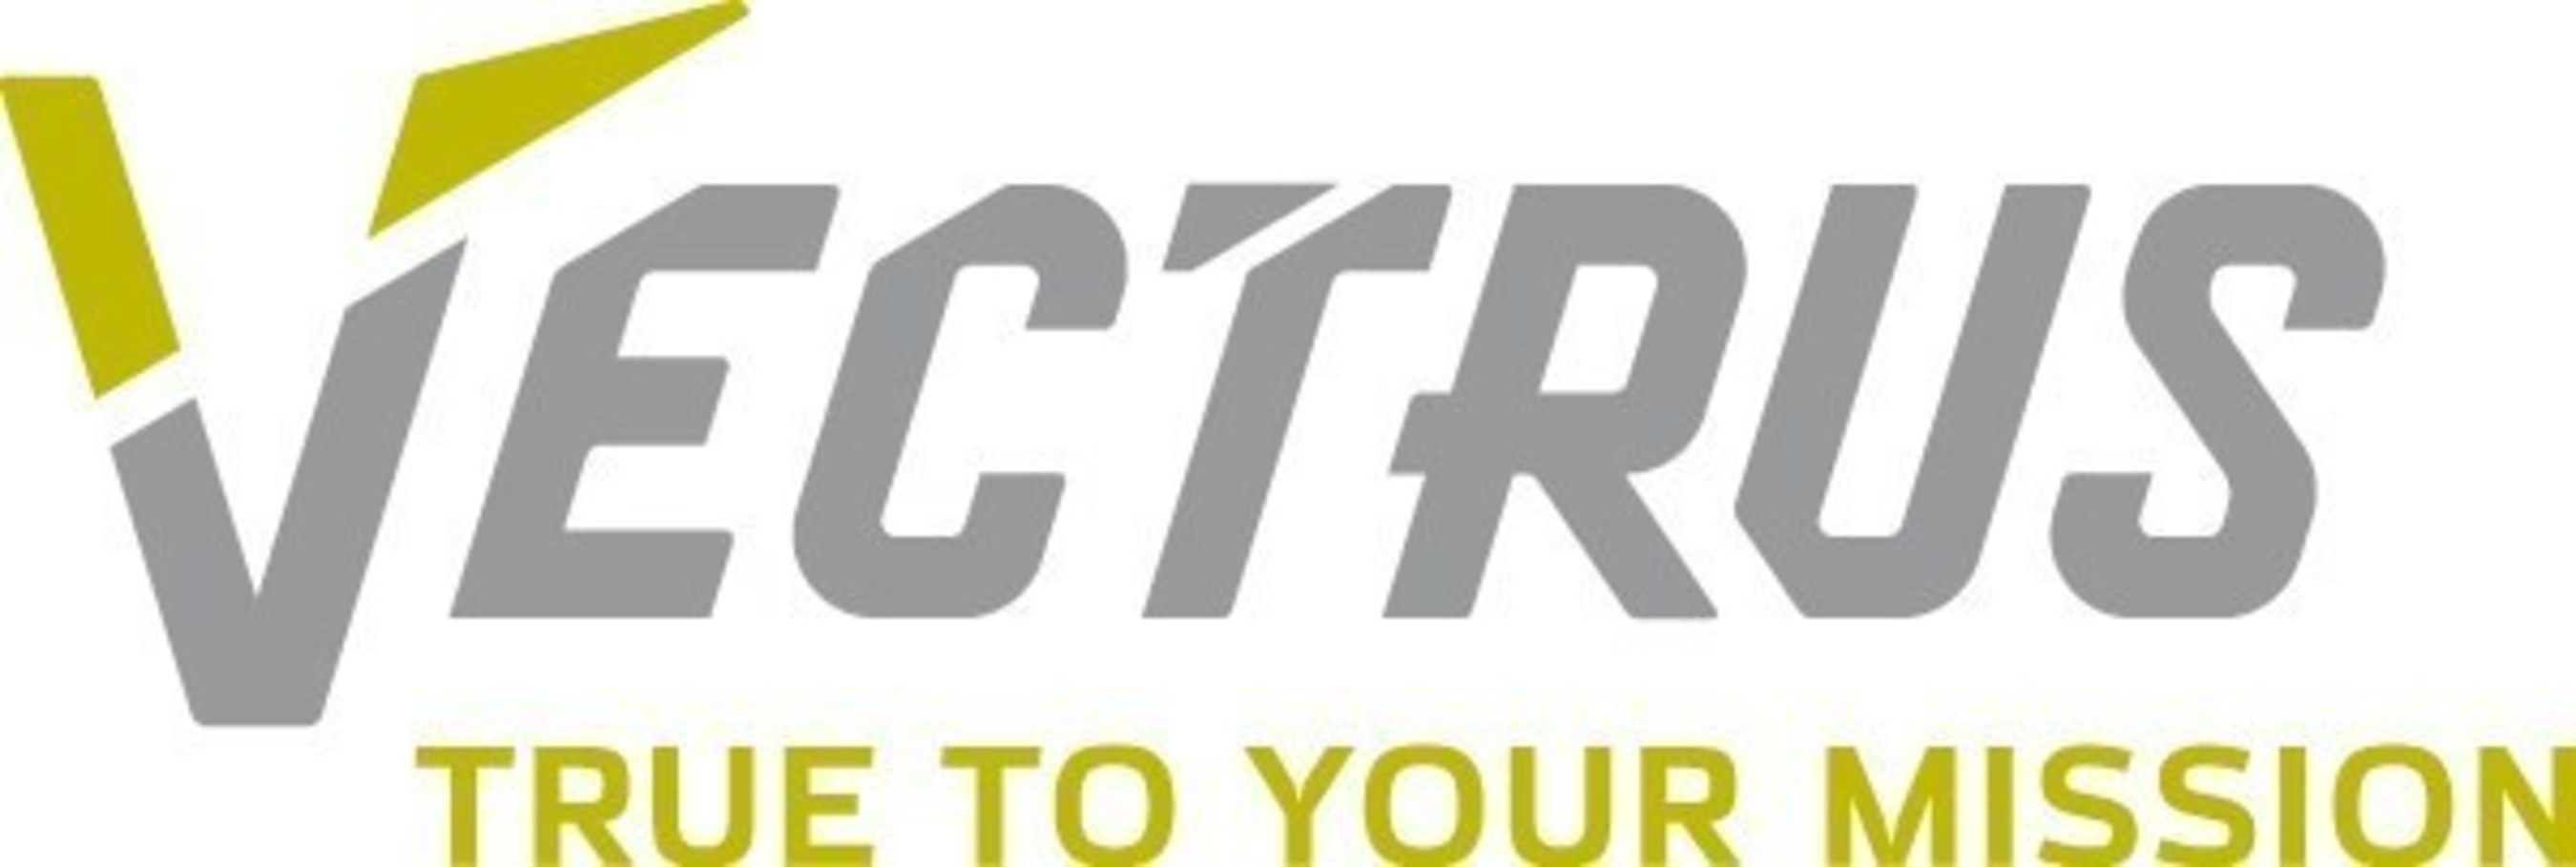 Vectrus Logo.